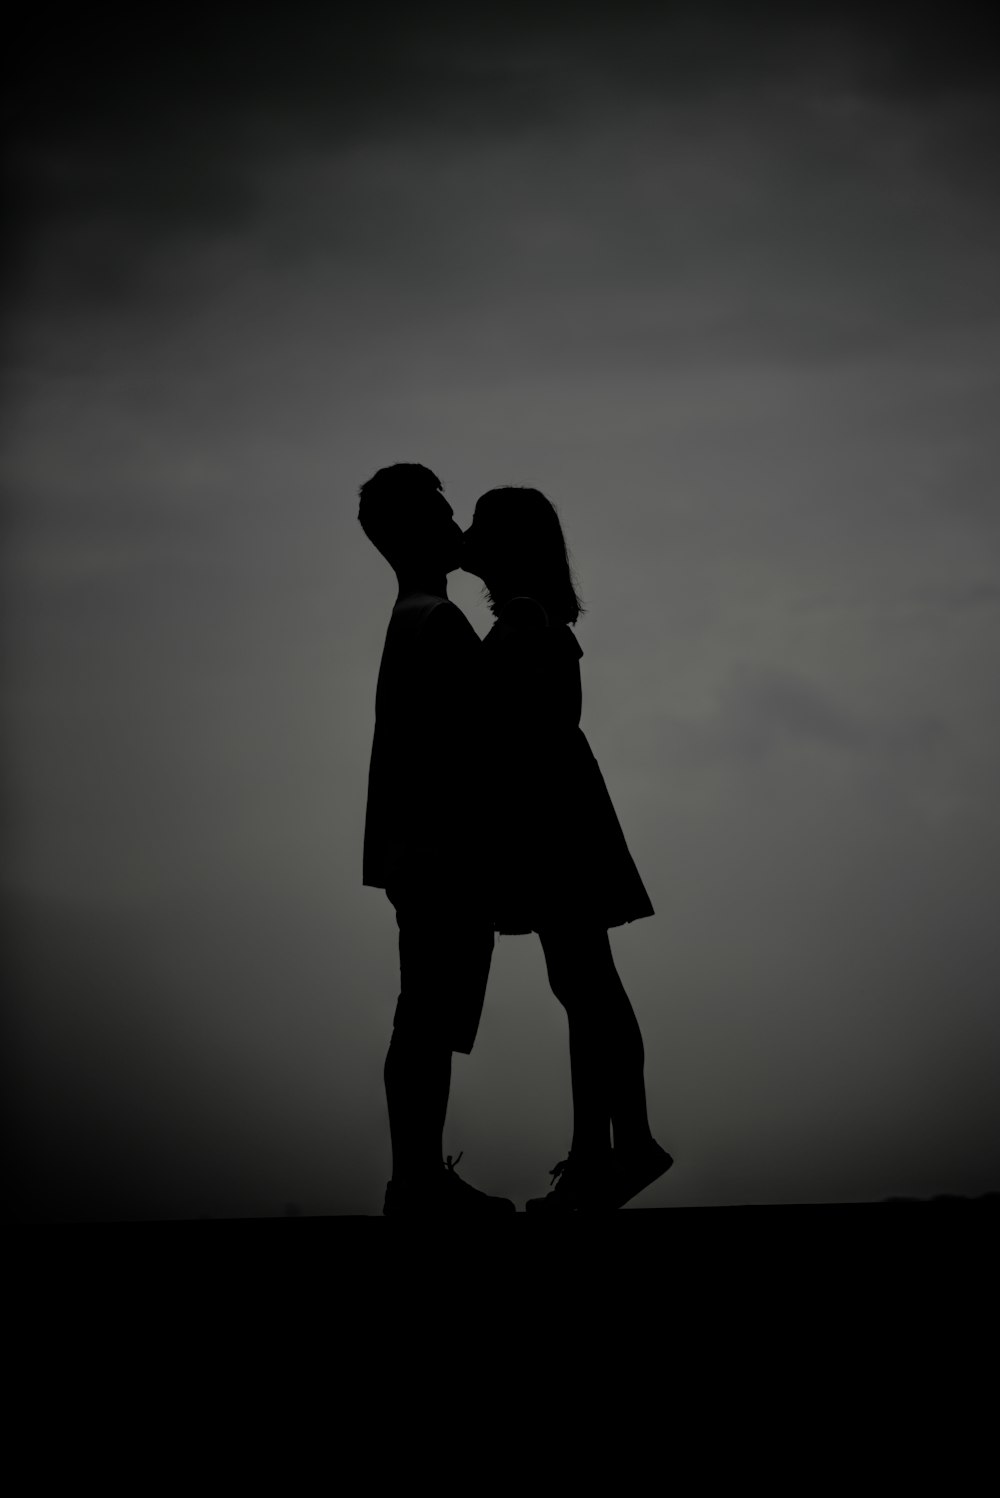 키스하는 남자와 여자의 실루엣 사진